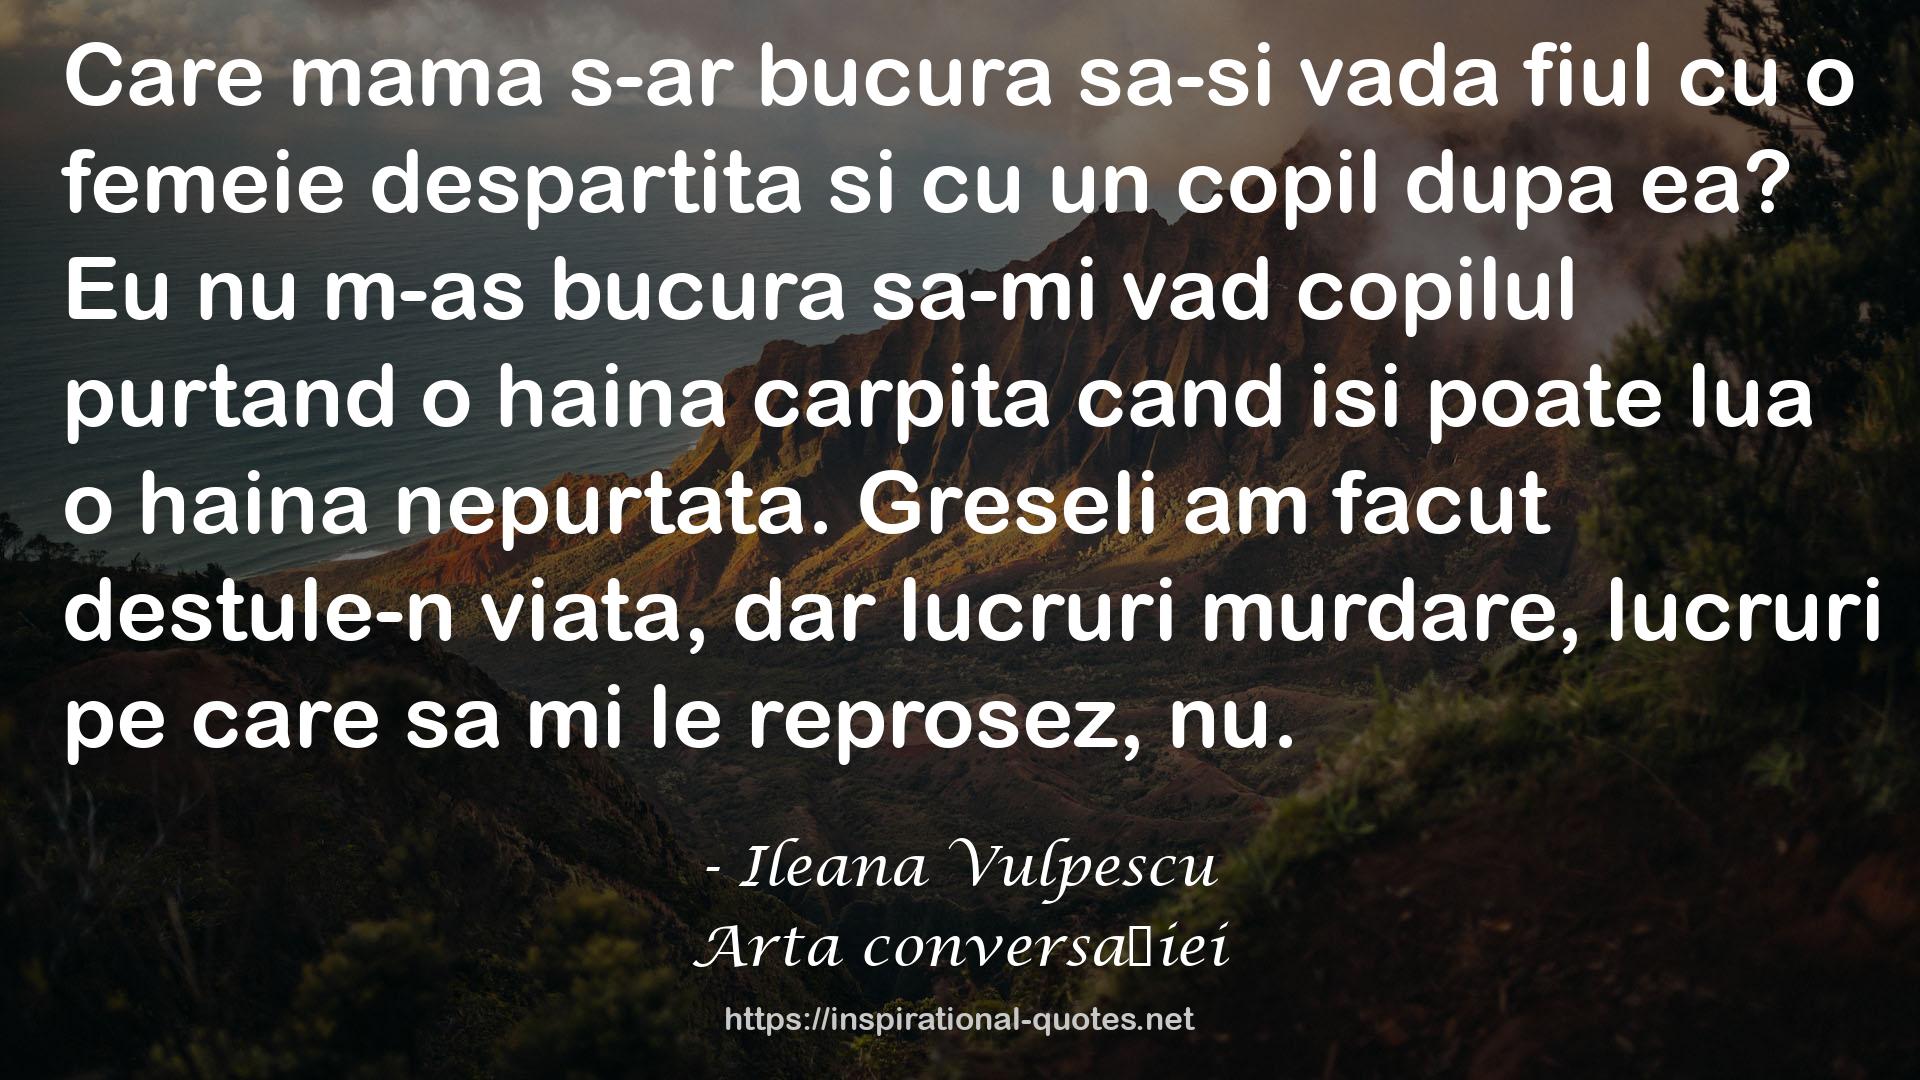 Ileana Vulpescu QUOTES